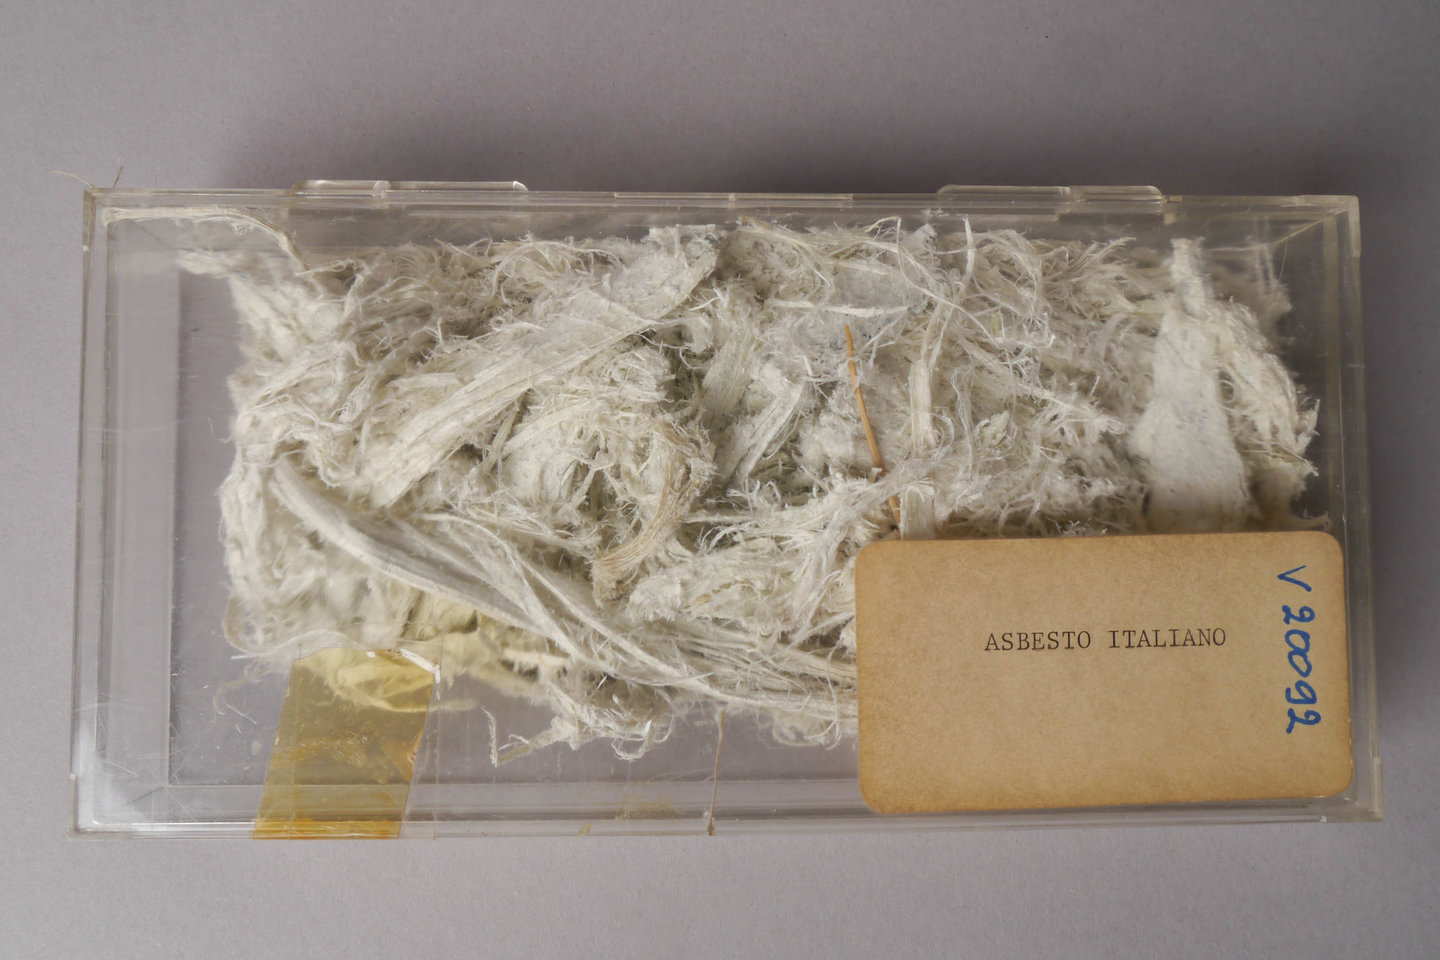 Staal van asbest uit Italië